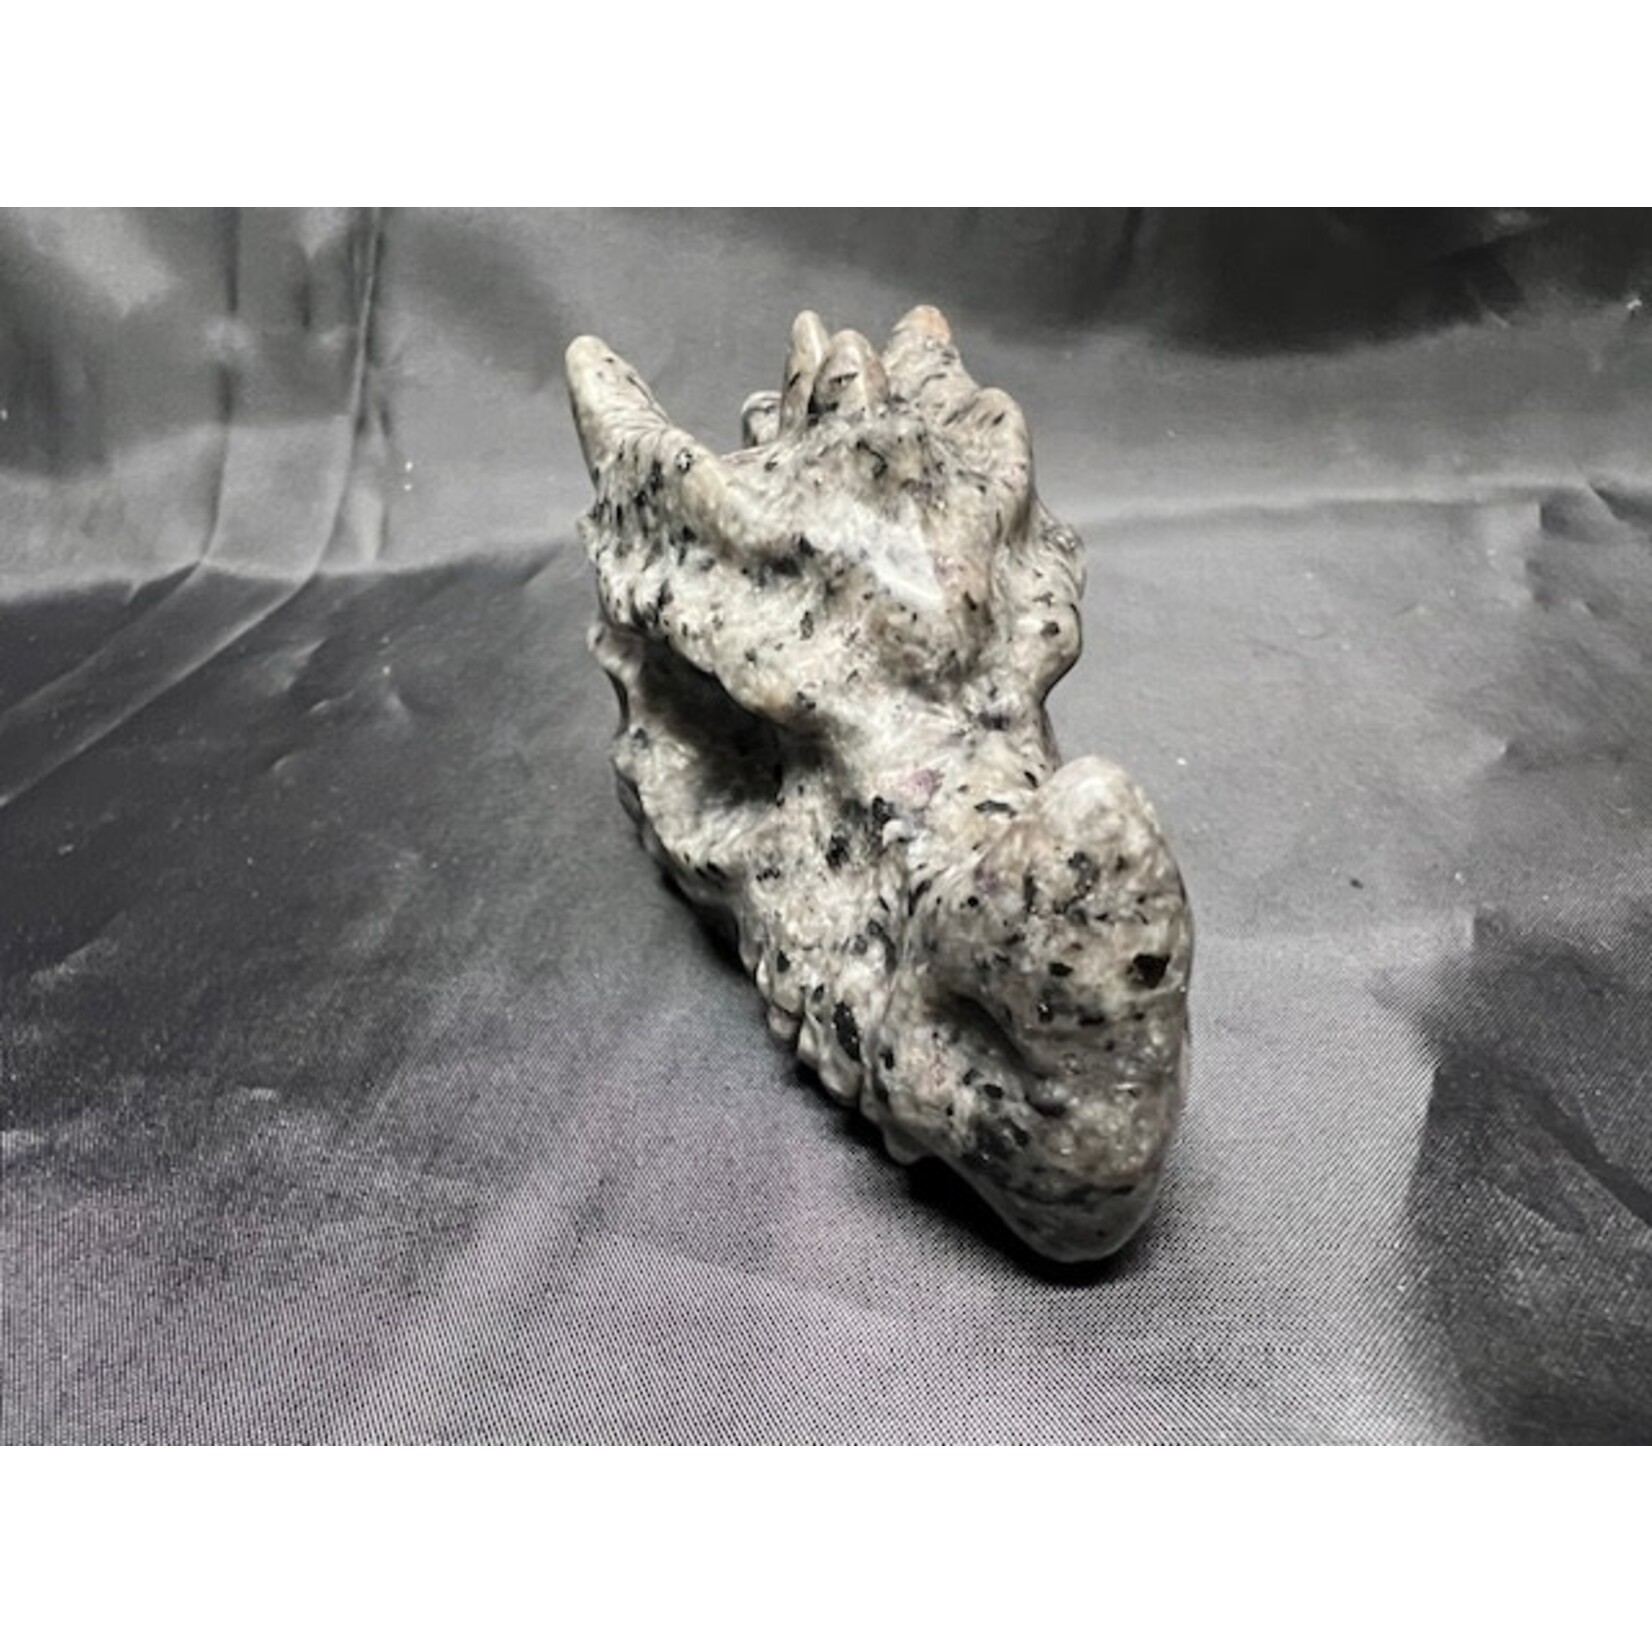 Yooperlite draak nr. 1 (8 cm)